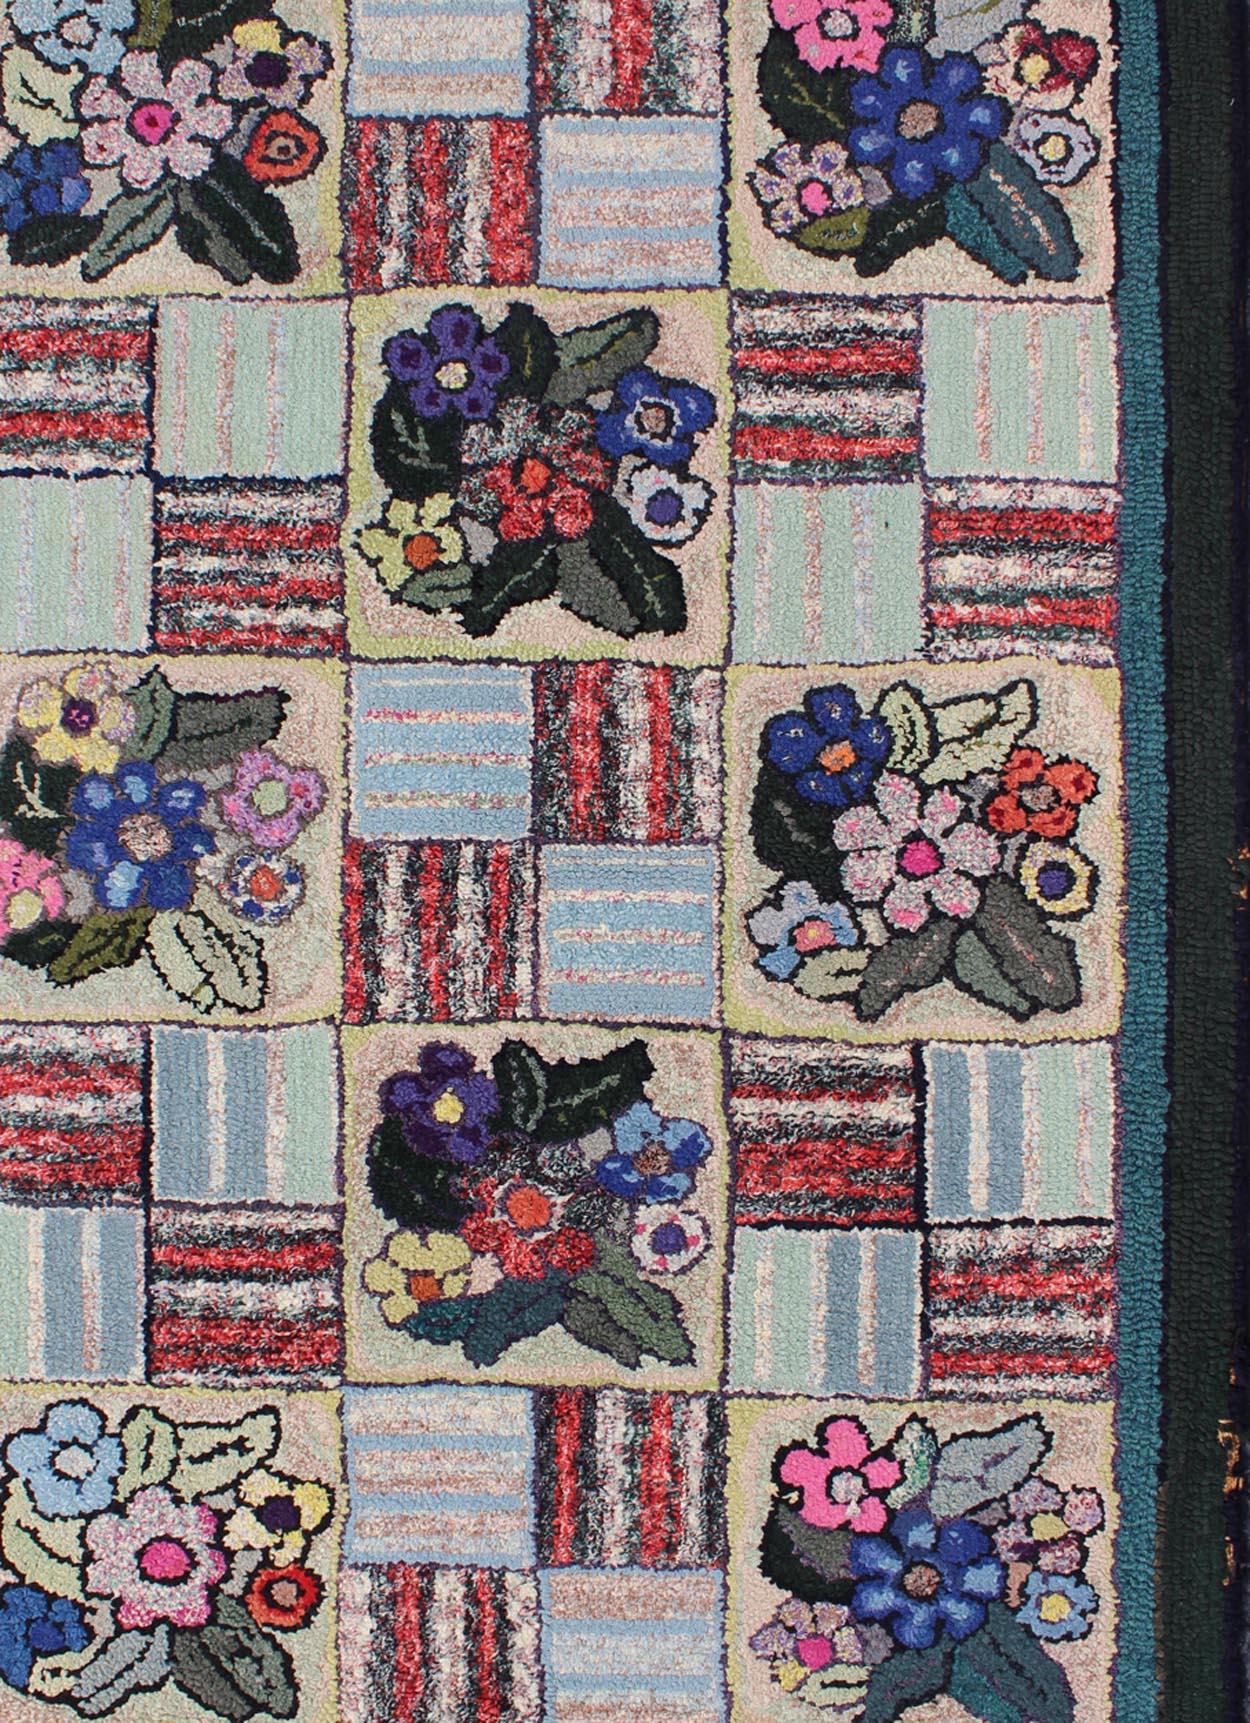 Tapis crocheté américain vintage à motifs floraux, Keivan Woven Arts / tapis L11-0606, pays d'origine / type : États-Unis / Tapis crocheté, circa 1930

D'un style, d'une couleur et d'une composition ingénieux, les caractéristiques de ce